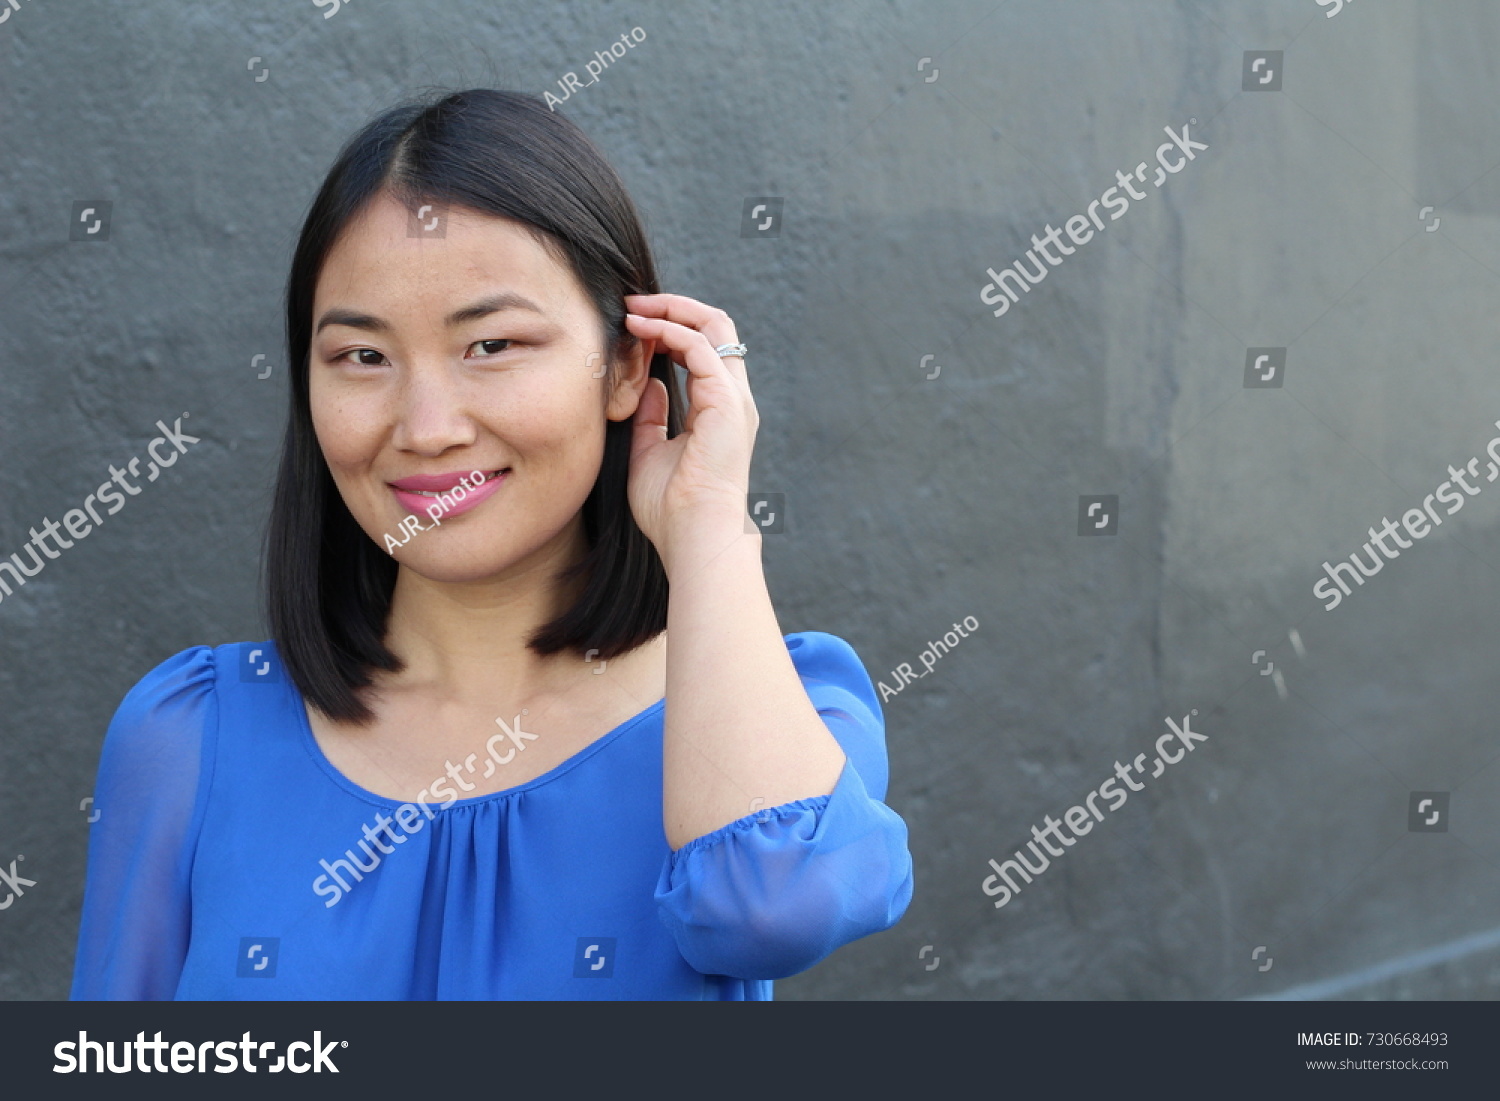 Asian Woman Touching Her Hair Copy Stock Photo 730668493 | Shutterstock